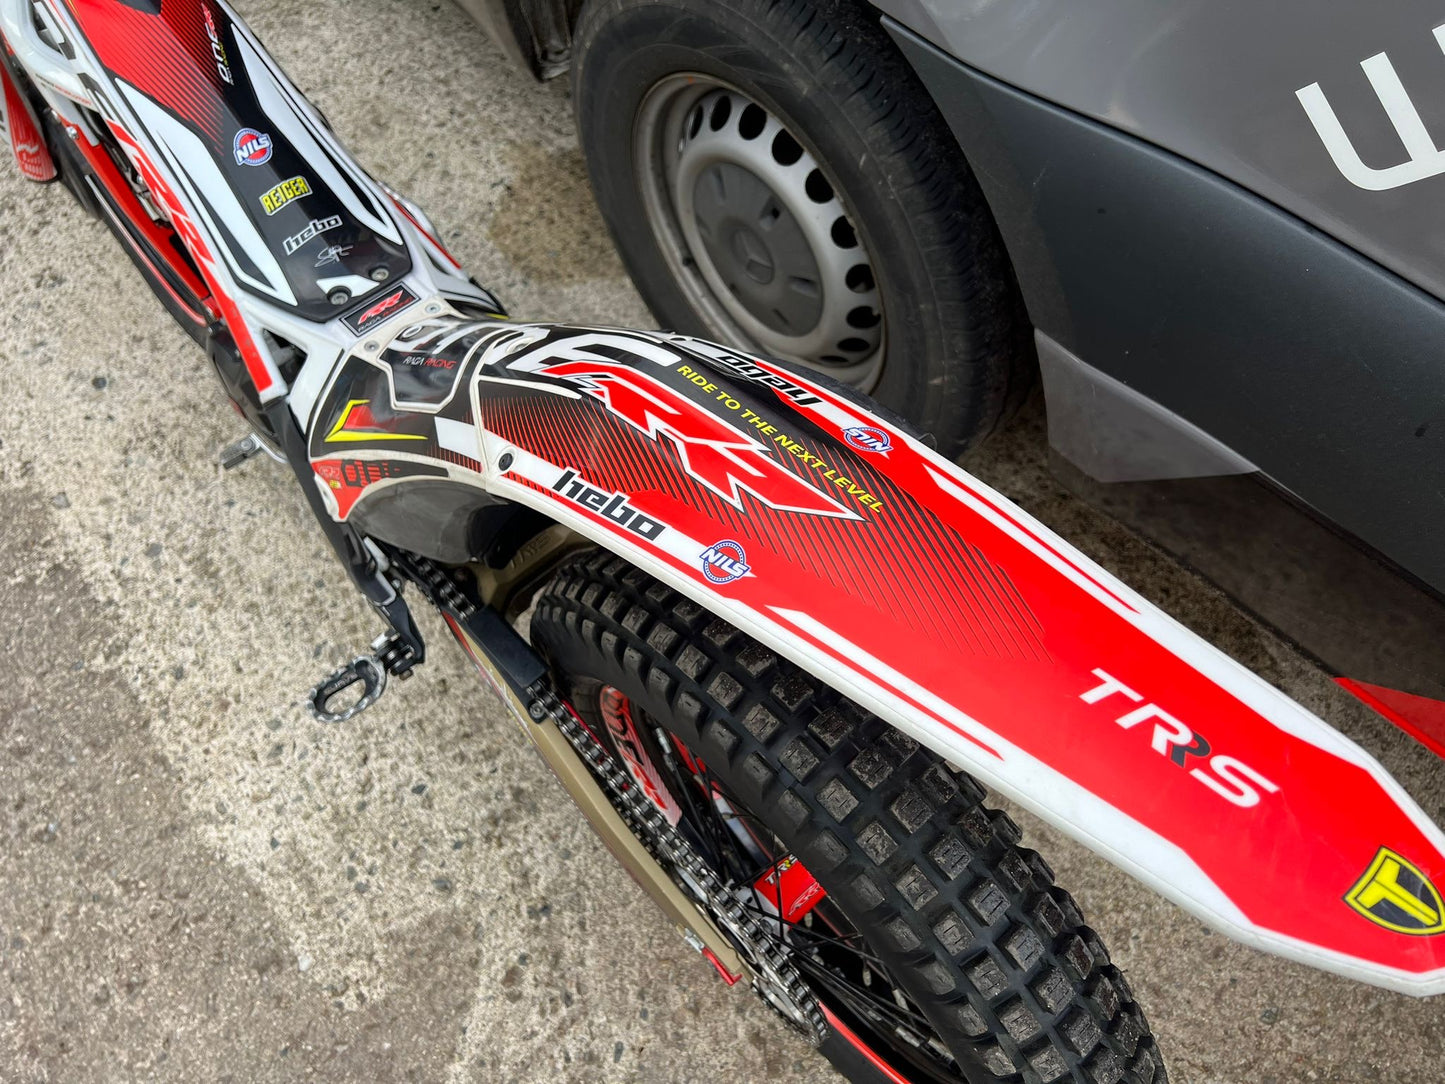 2023 TRS One RR 250cc Trials Bike